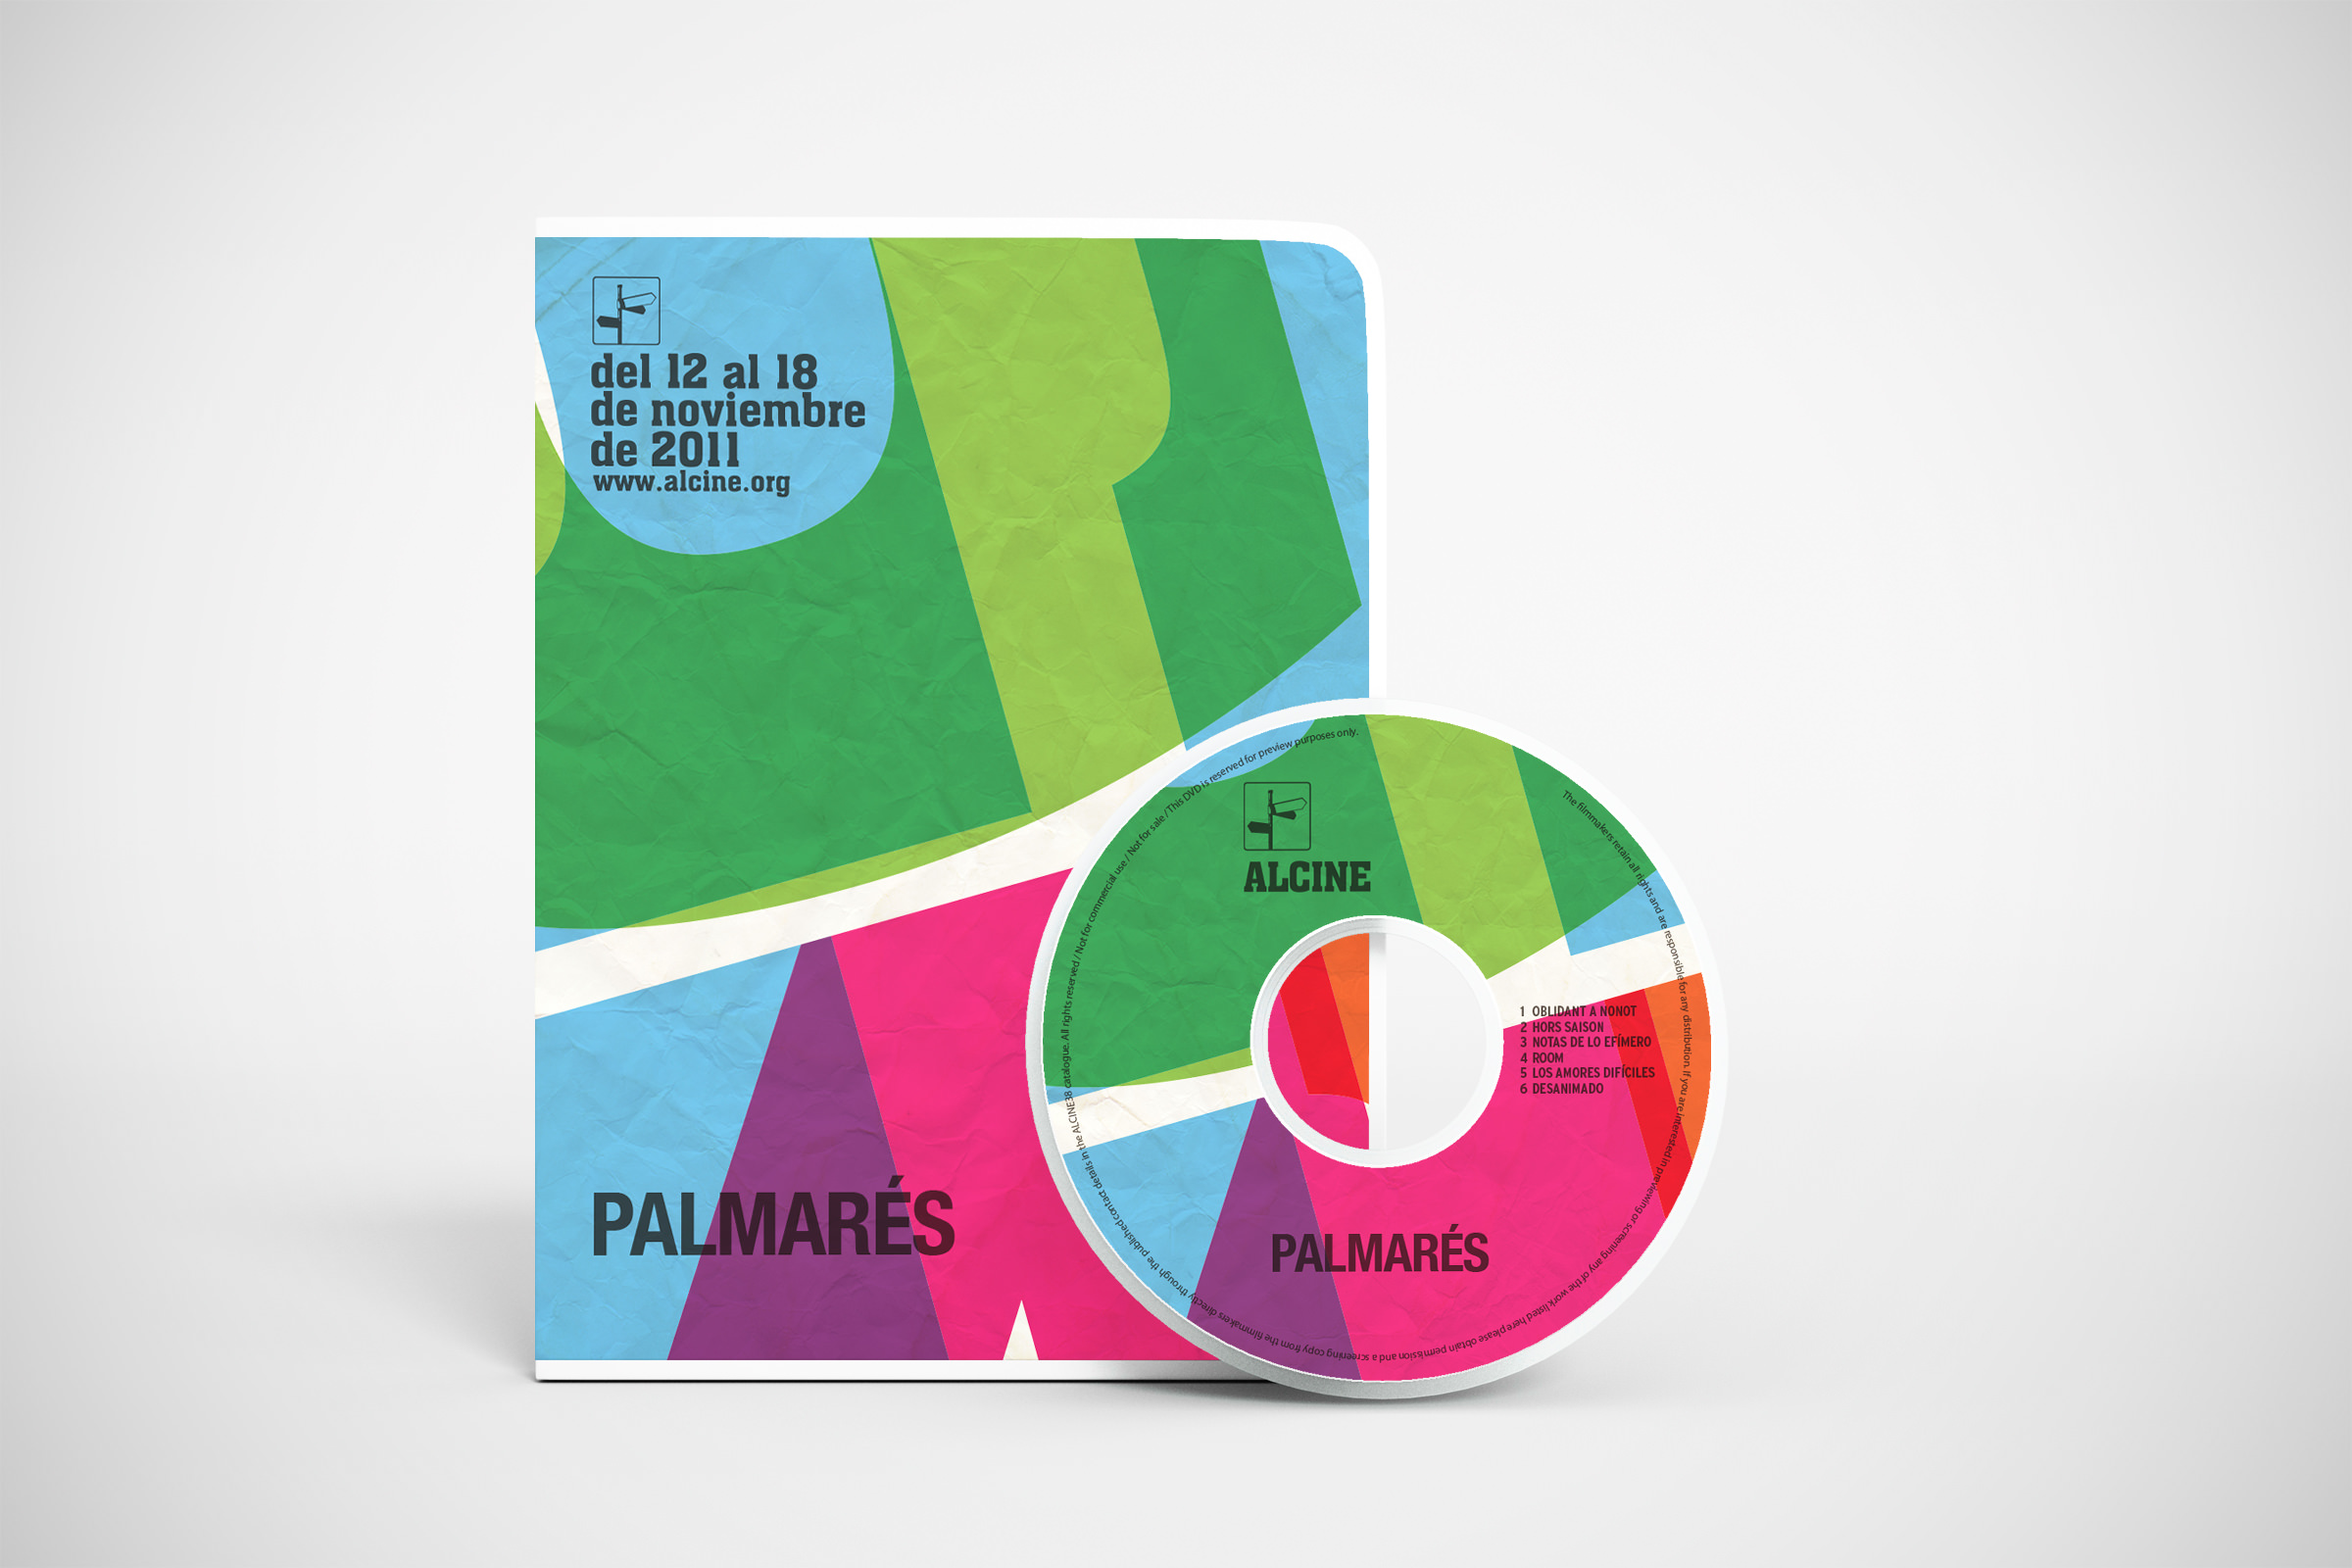 Diseño gráfico y maquetación Madrid, dvd palmarés Alcine 41